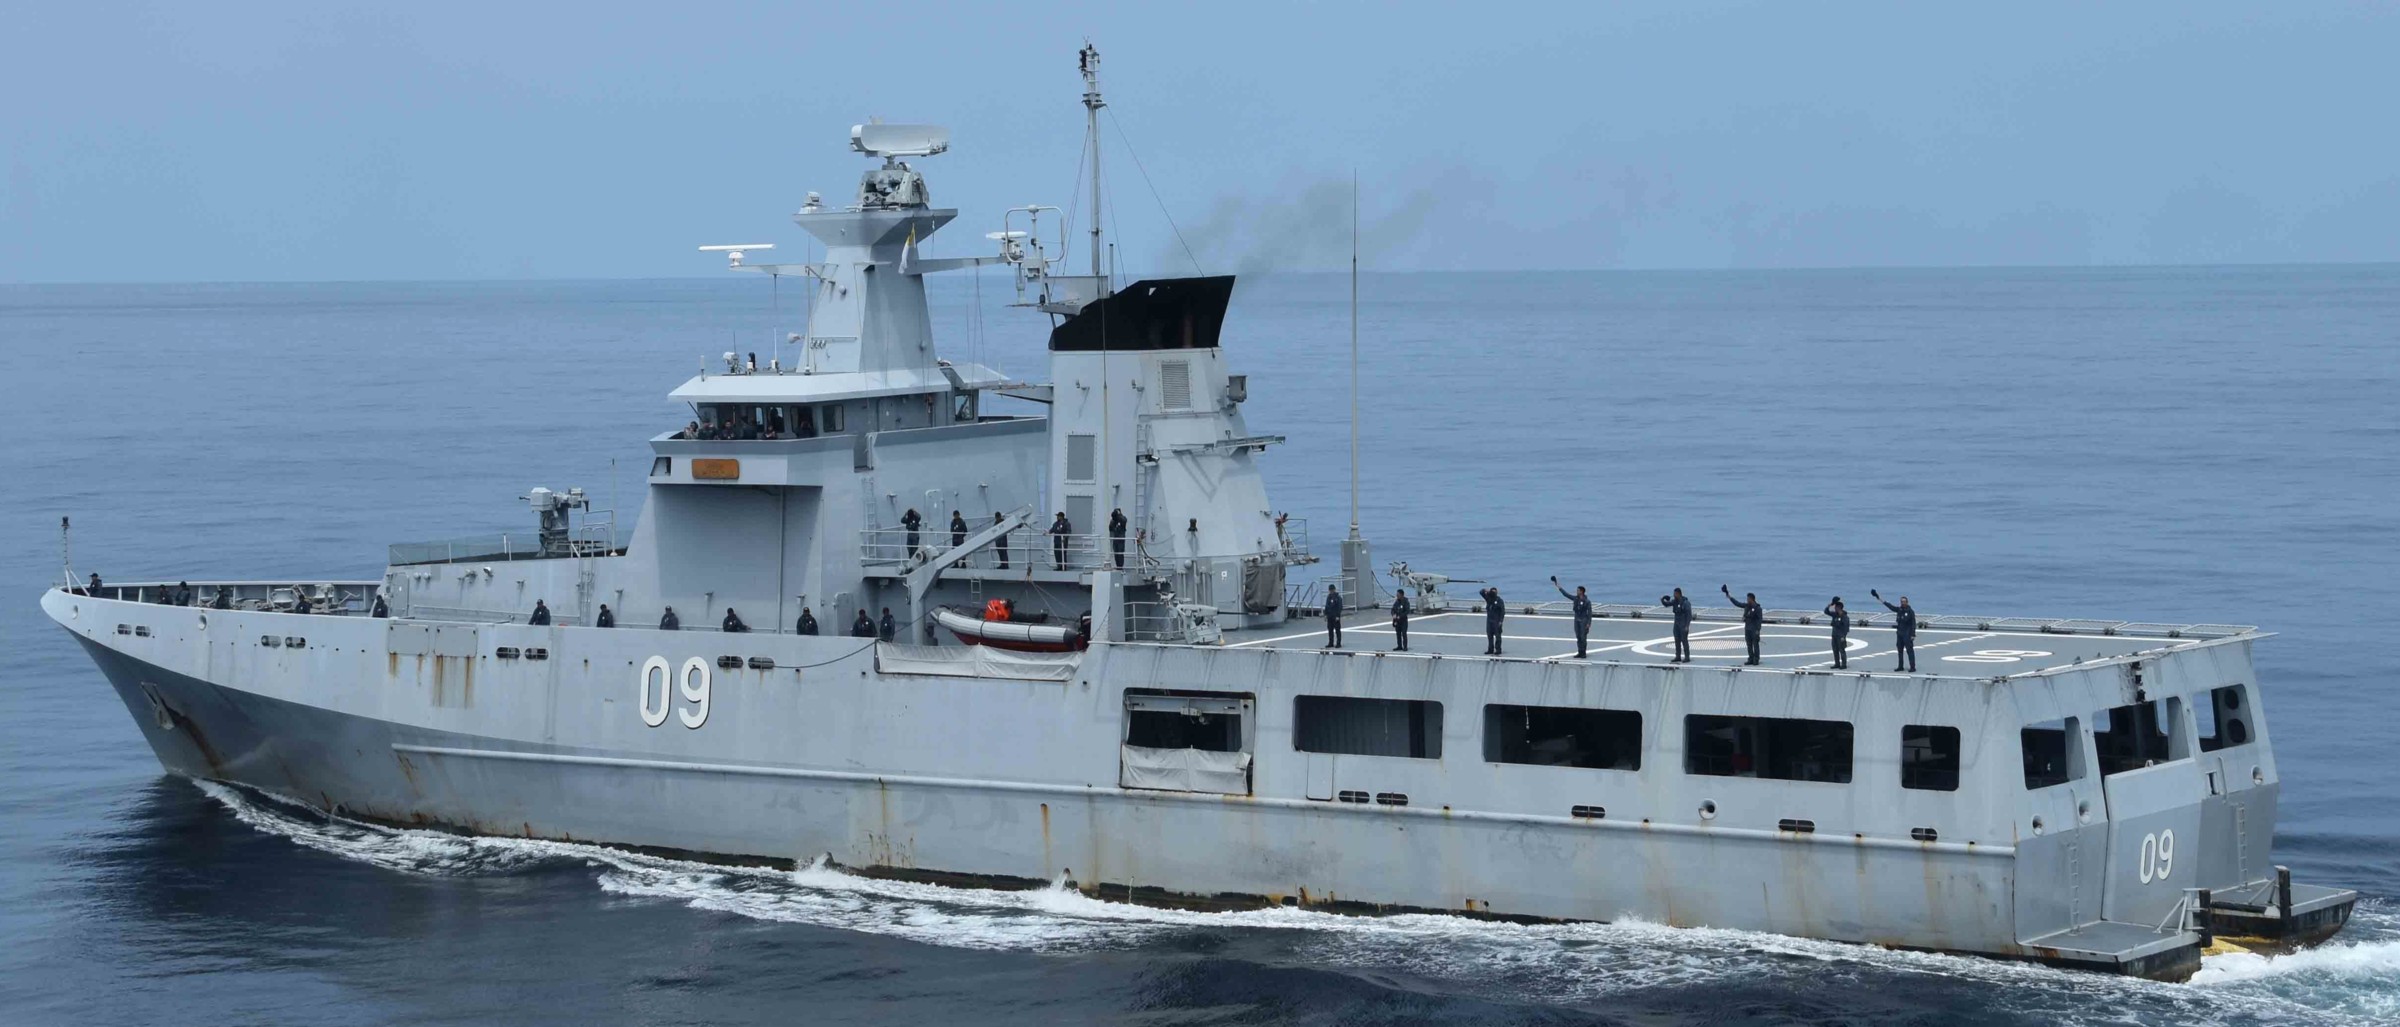 opv 09 kdb daruttaqwa offshore patrol vessel darussalem class royal brunei navy 05